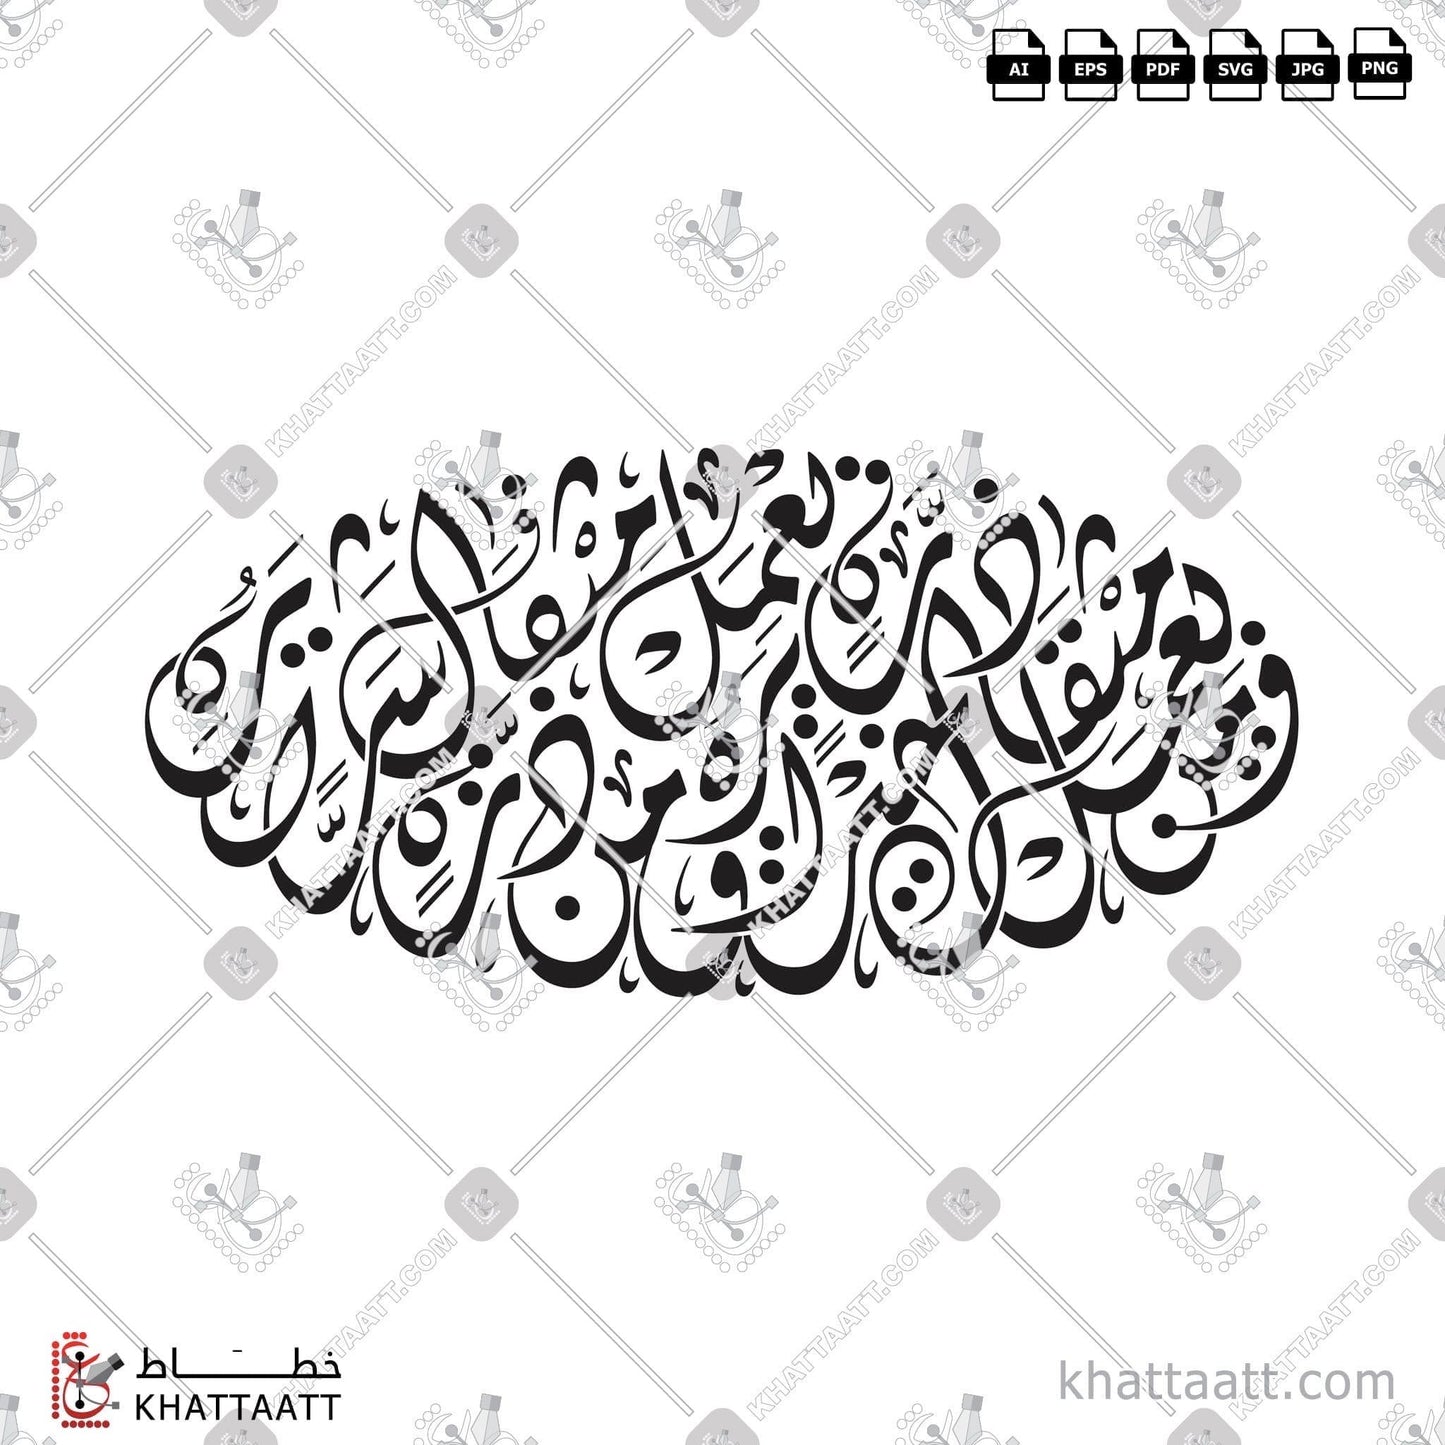 Digital Arabic calligraphy vector of فمن يعمل مثقال ذرة خيراً يره، ومن يعمل مثقال ذرة شراً يره in Diwani - الخط الديواني